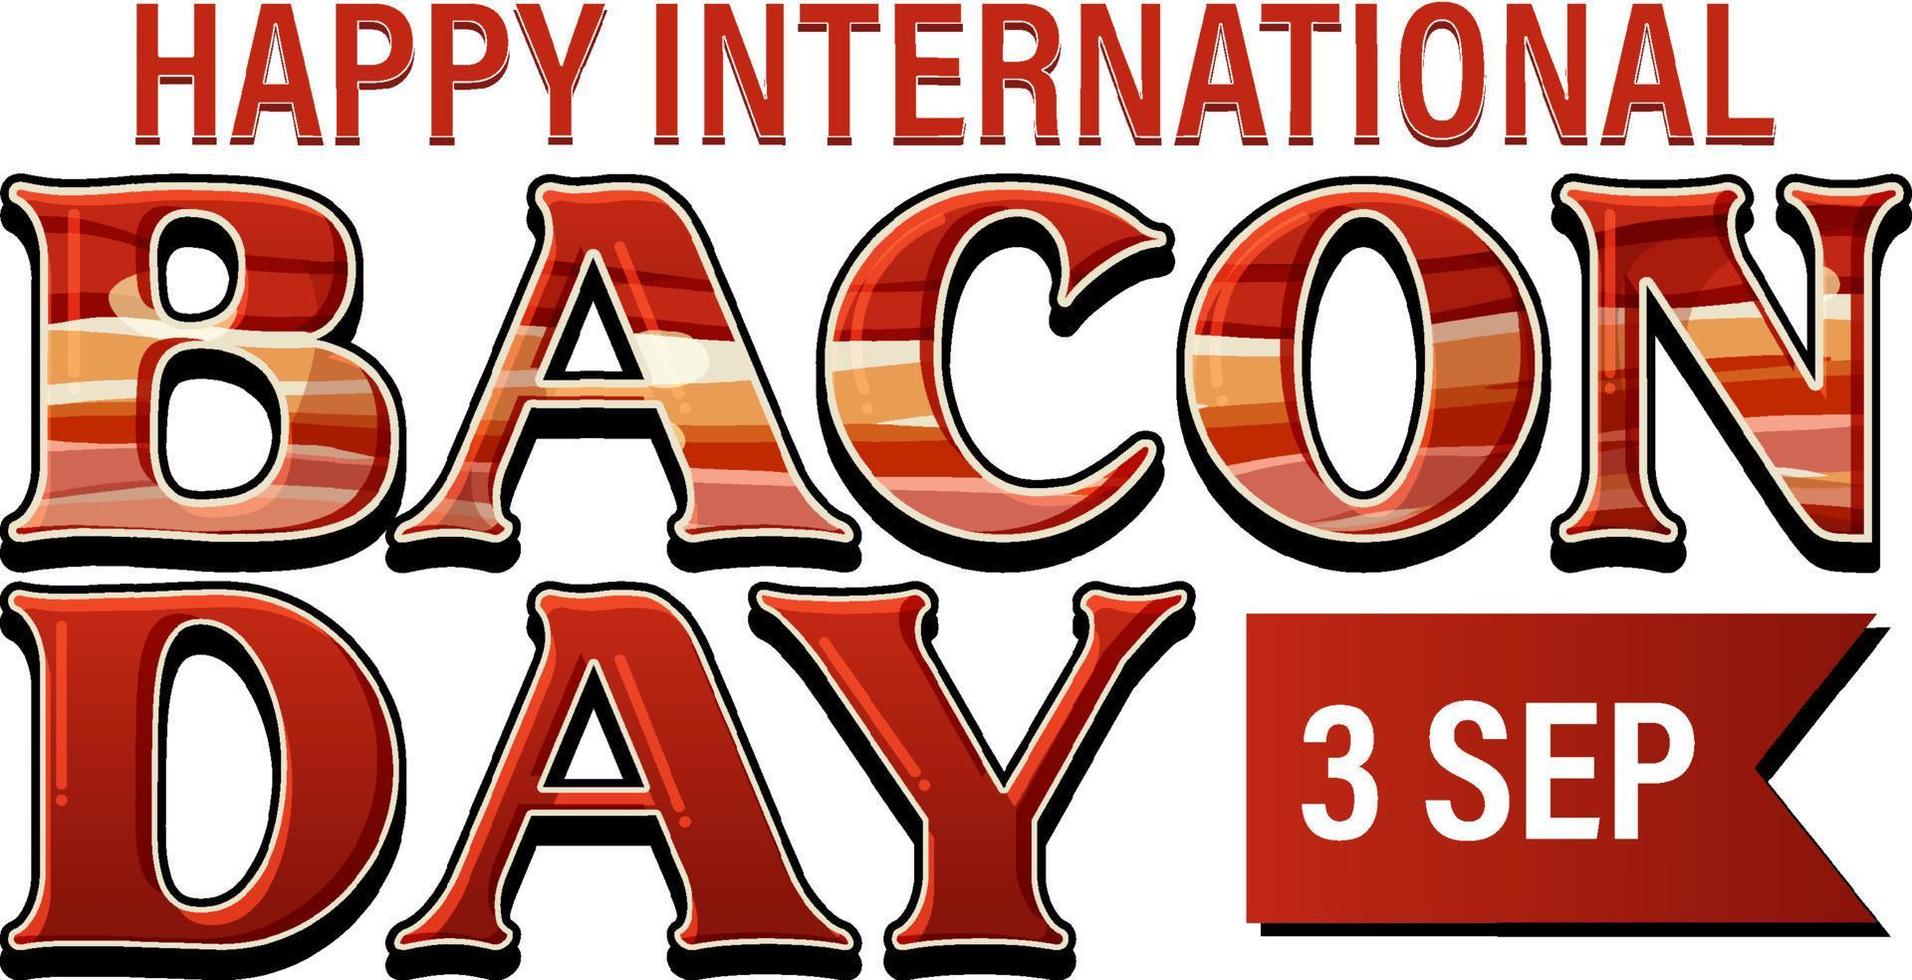 internationella bacondagen logotyp banner vektor